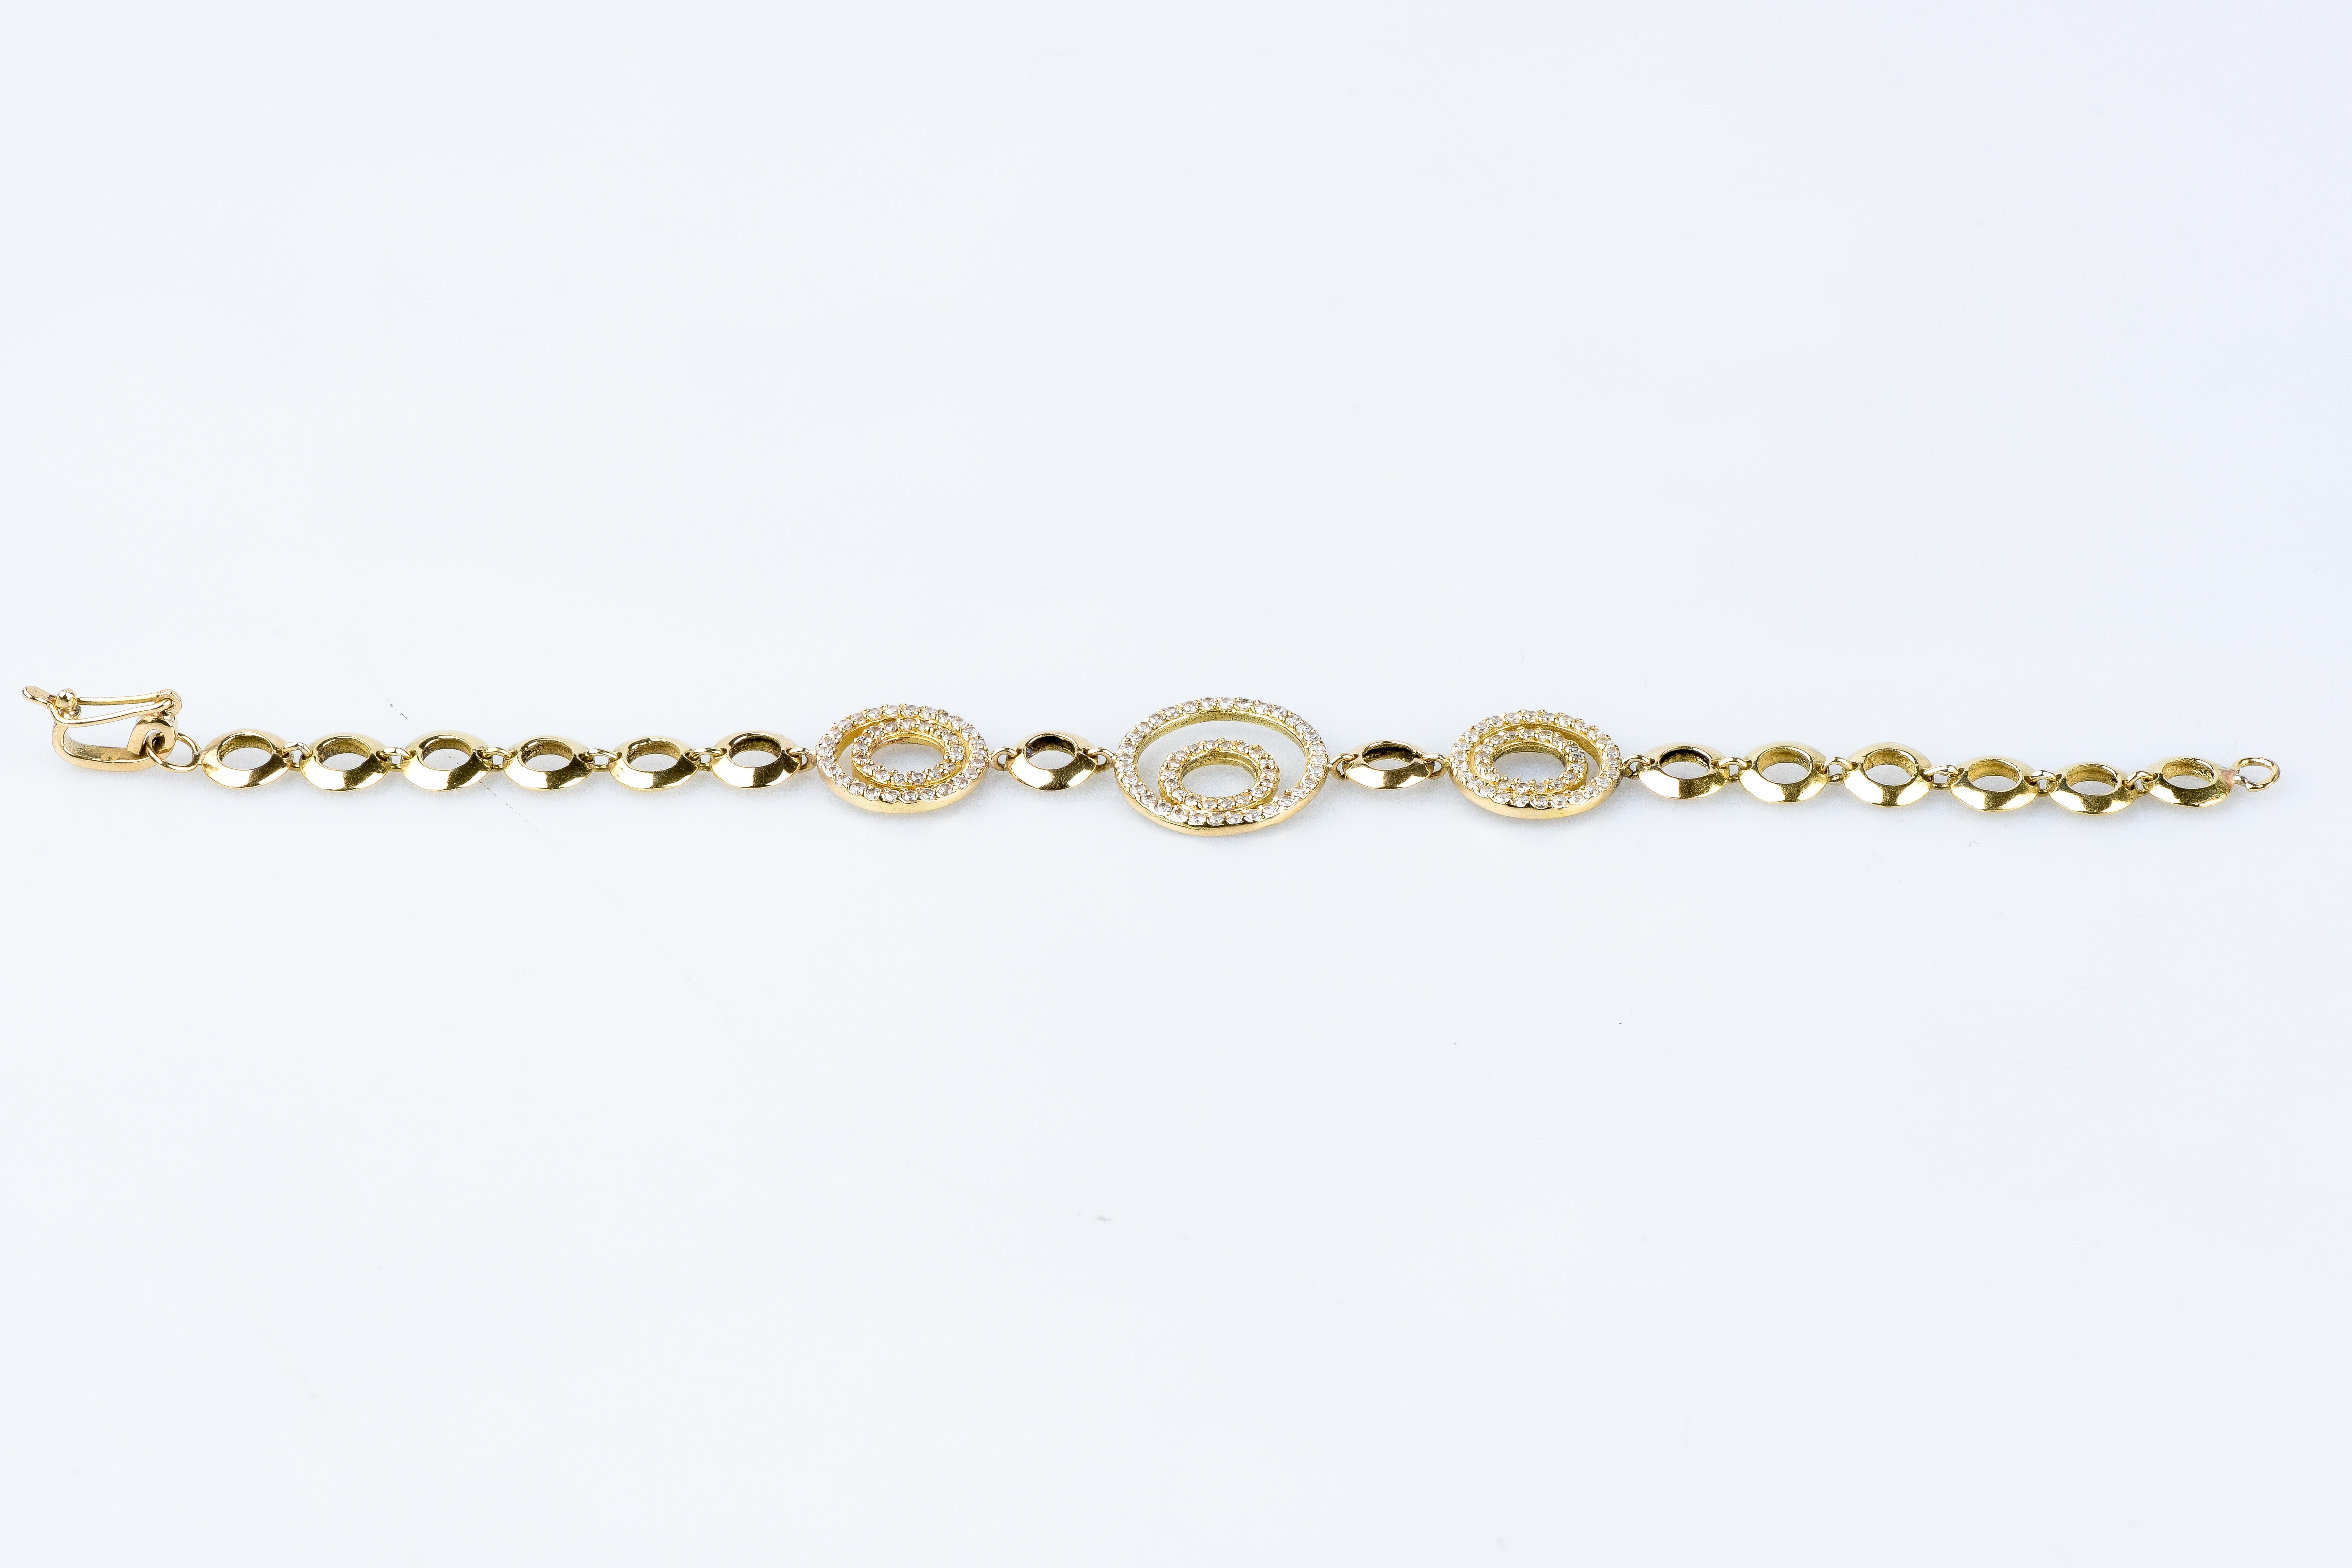 bracelet en or jaune 18 carats diamant conçu avec 136 diamants ronds de taille brillant pesant 1,36 carat.      

Qualité du diamant
Couleur : H
Clarté : SI

Poids : 13.00 gr.

Dimensions : 18 x 0,20 cm

Poinçon or 18 carats sur le bijou.

Etat :